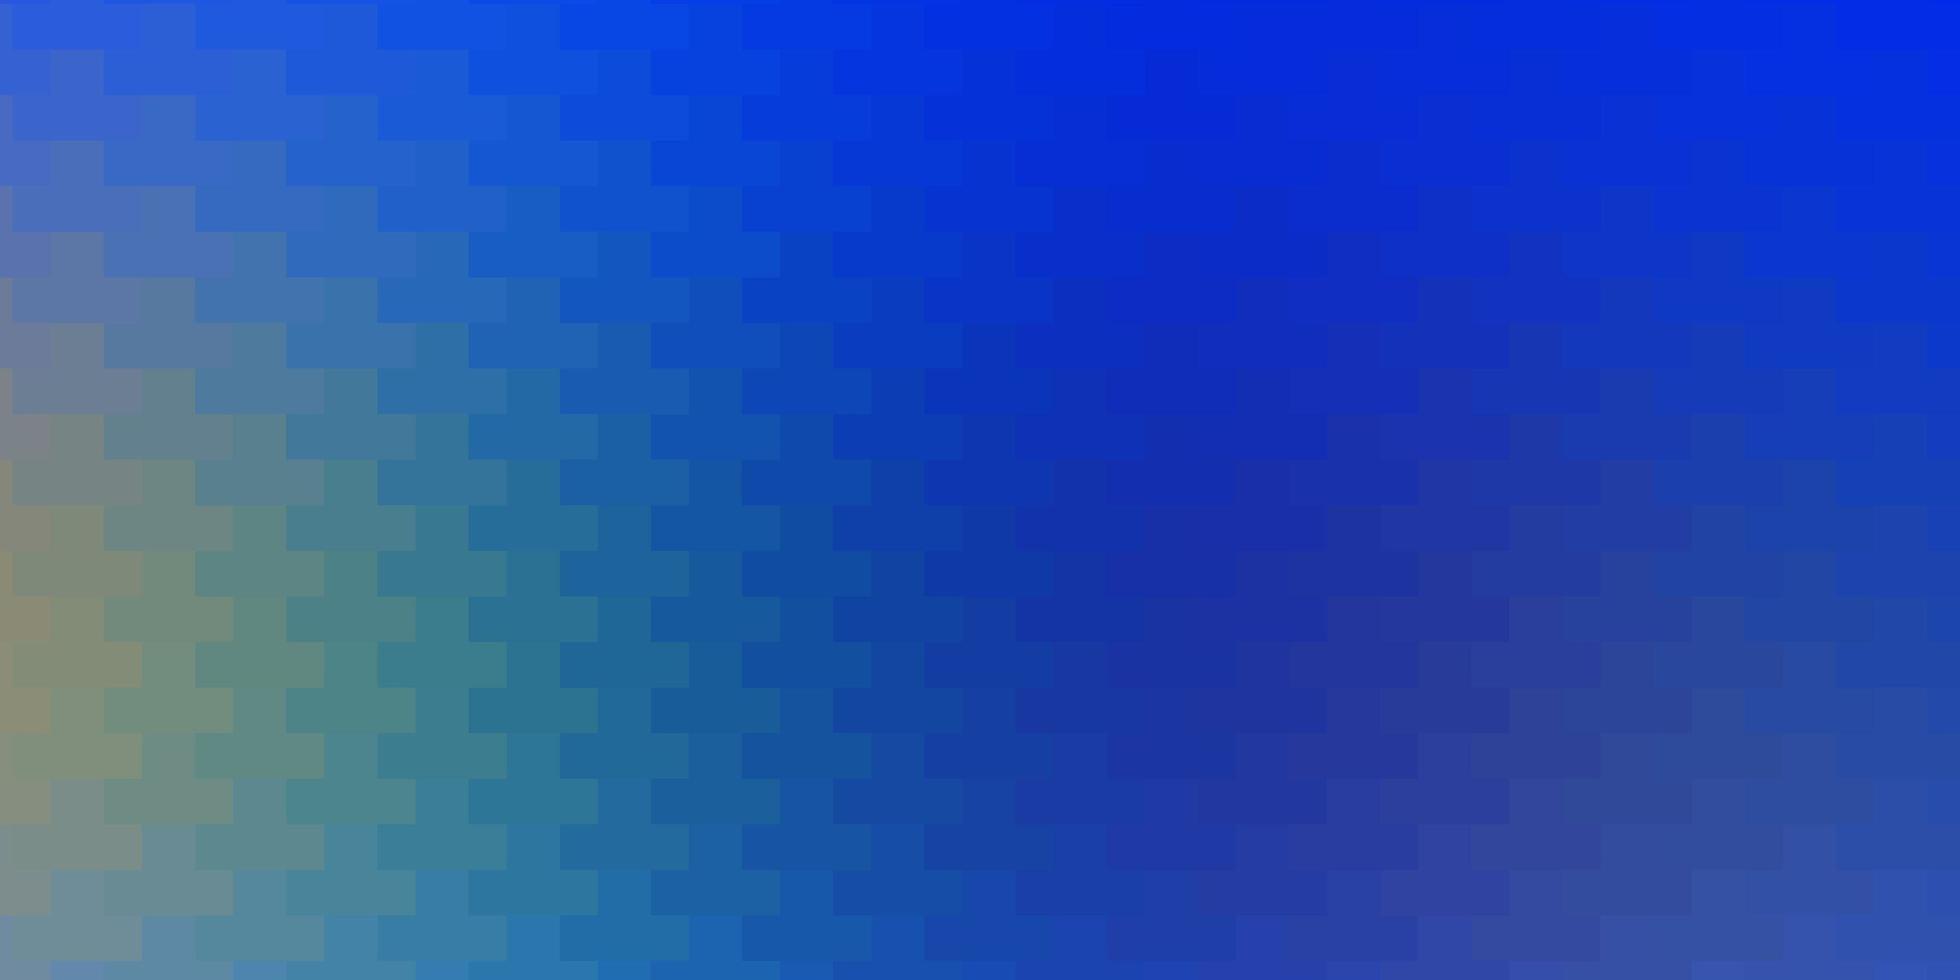 azul claro, padrão de vetor amarelo em estilo quadrado.